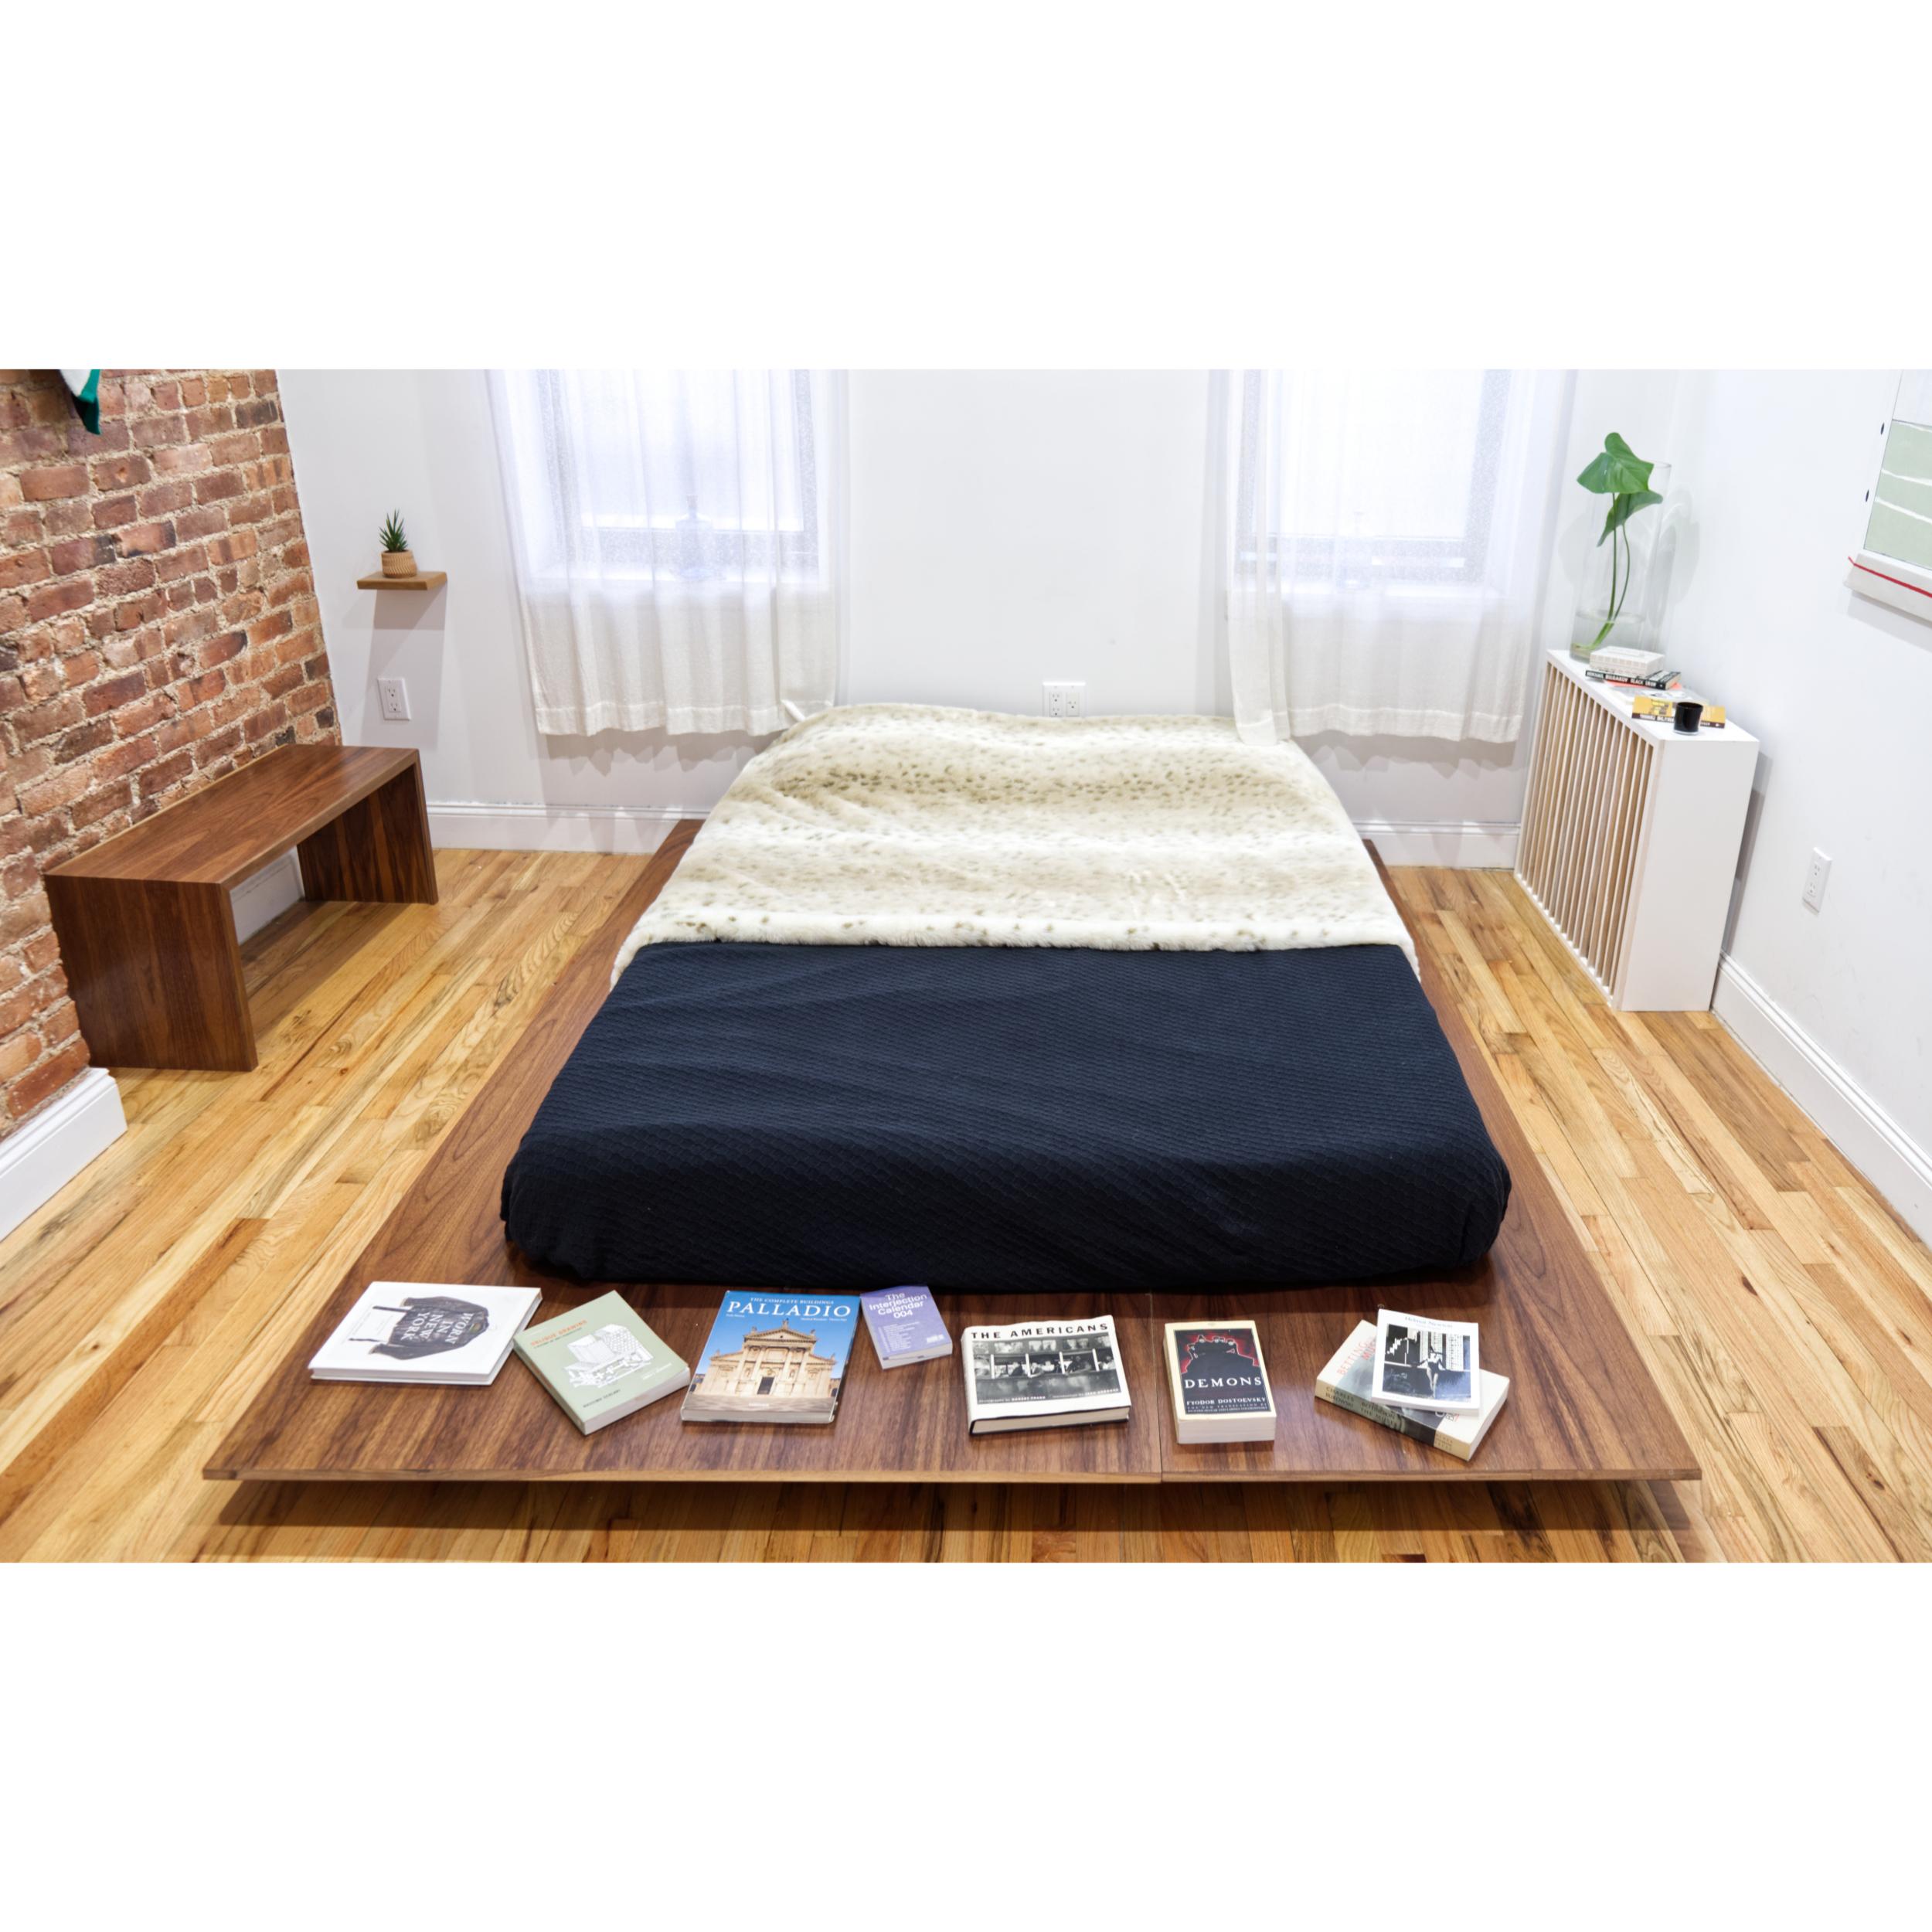 Ode à notre ami Donald Judd, le design du cadre de lit fait appel au style tatami des chambres japonaises et au Hygge du confort danois. La révélation est célébrée dans son ombre. Le repos se fait plus près du sol pour un sommeil plus frais. La base